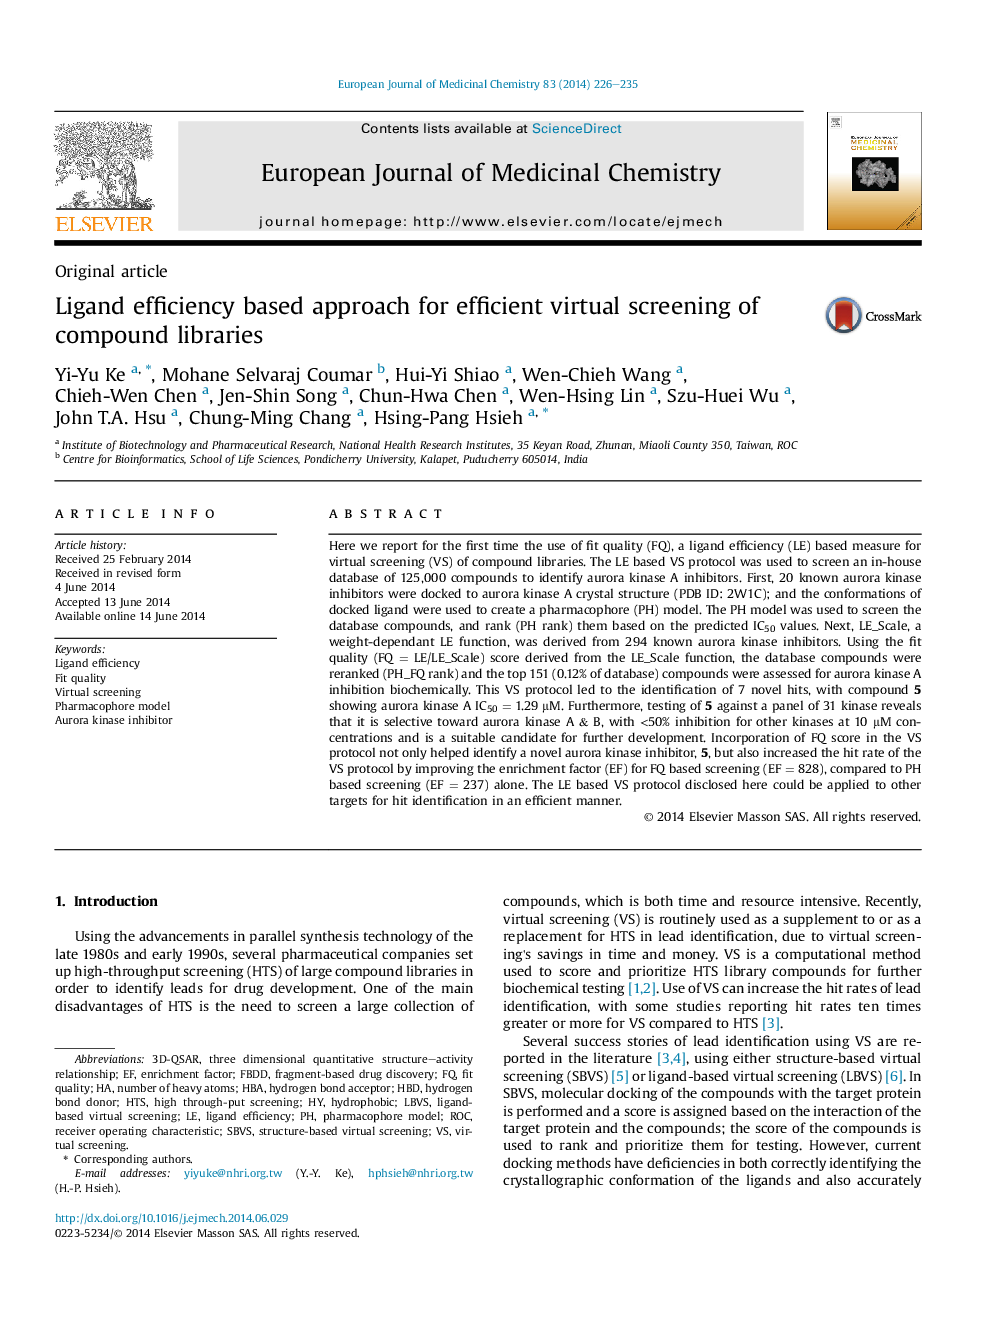 رهیافت بازدهی لیگاند برای نمایش مجازی کتابخانه های مرکب 